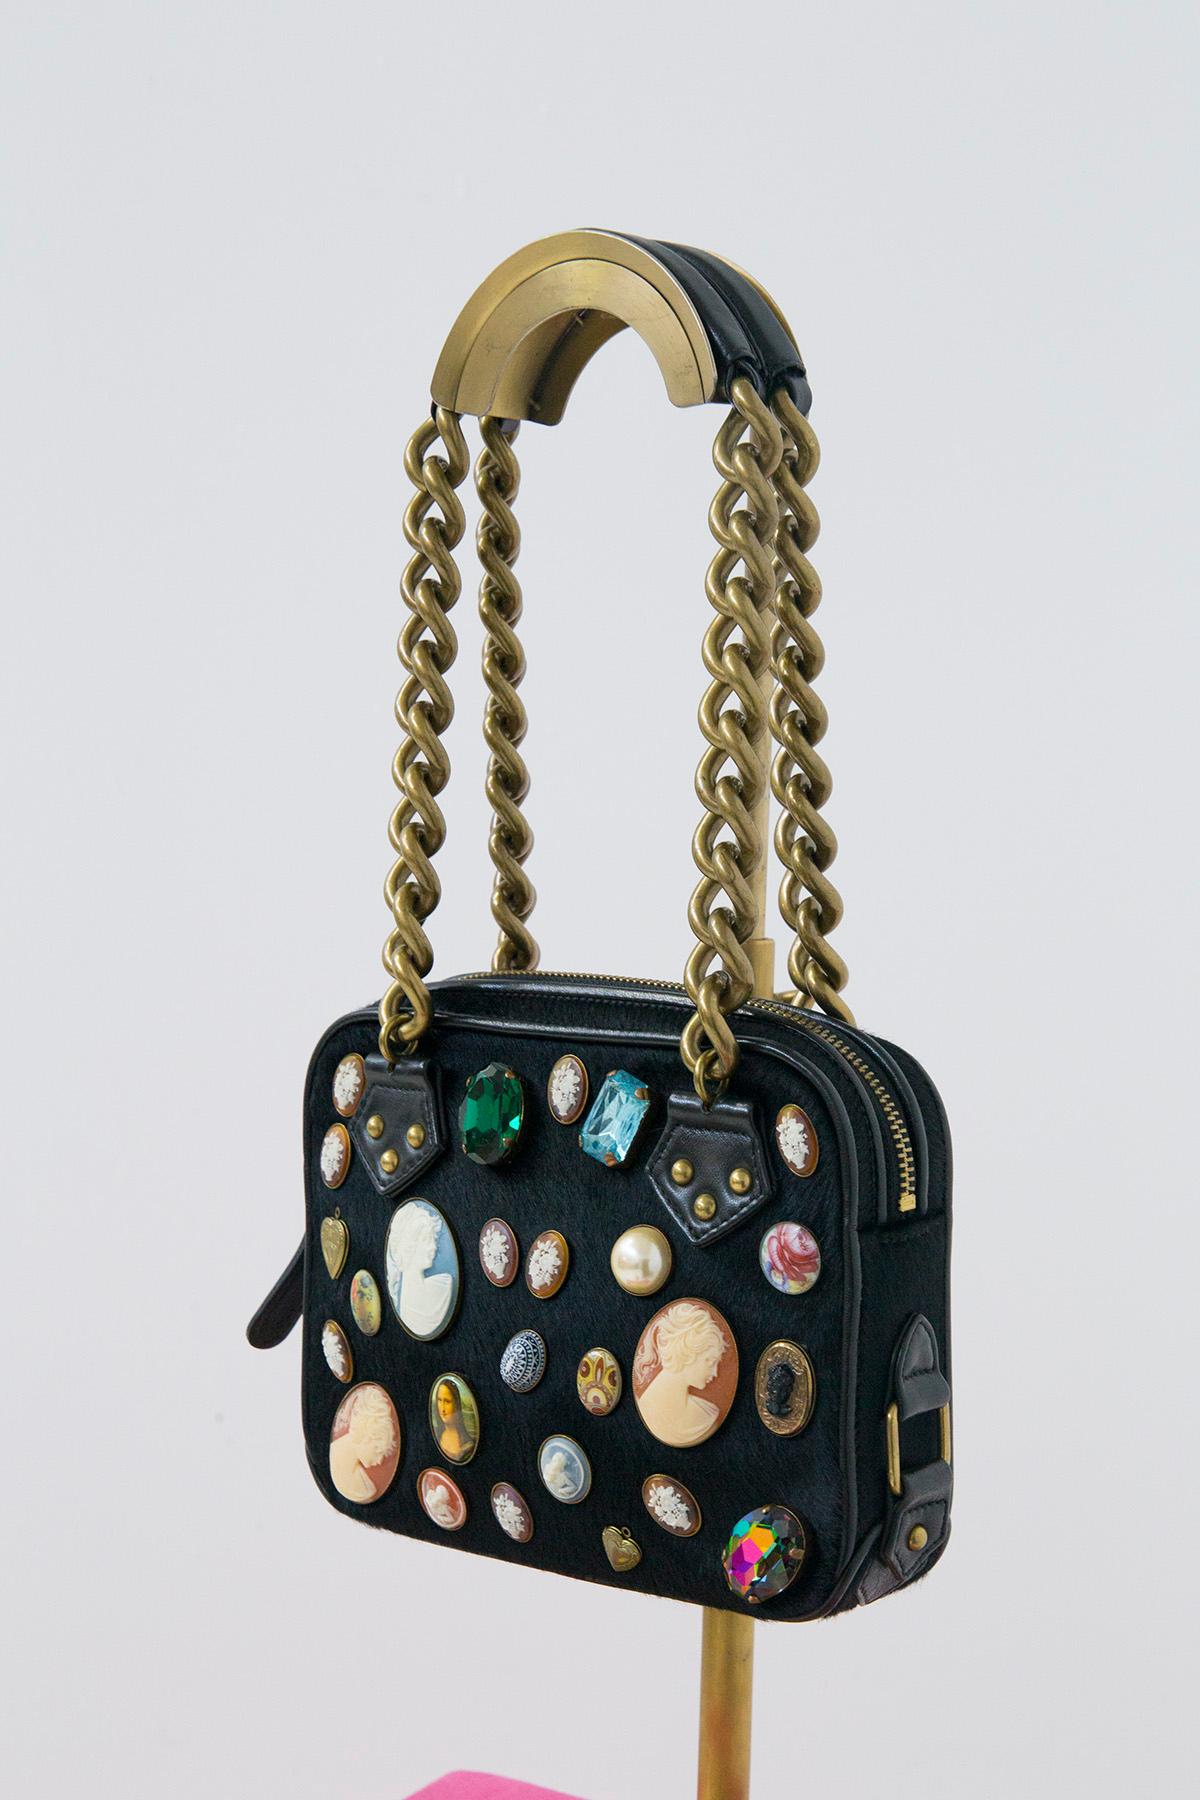 Superbe sac à bandoulière de la grande manufacture londonienne Paul Smith. Le sac est doté d'une bandoulière en chaîne en métal doré et d'empiècements en cuir sur le dessus pour adoucir l'épaule. Le sac a un cadre en cuir noir, mais à l'avant du sac